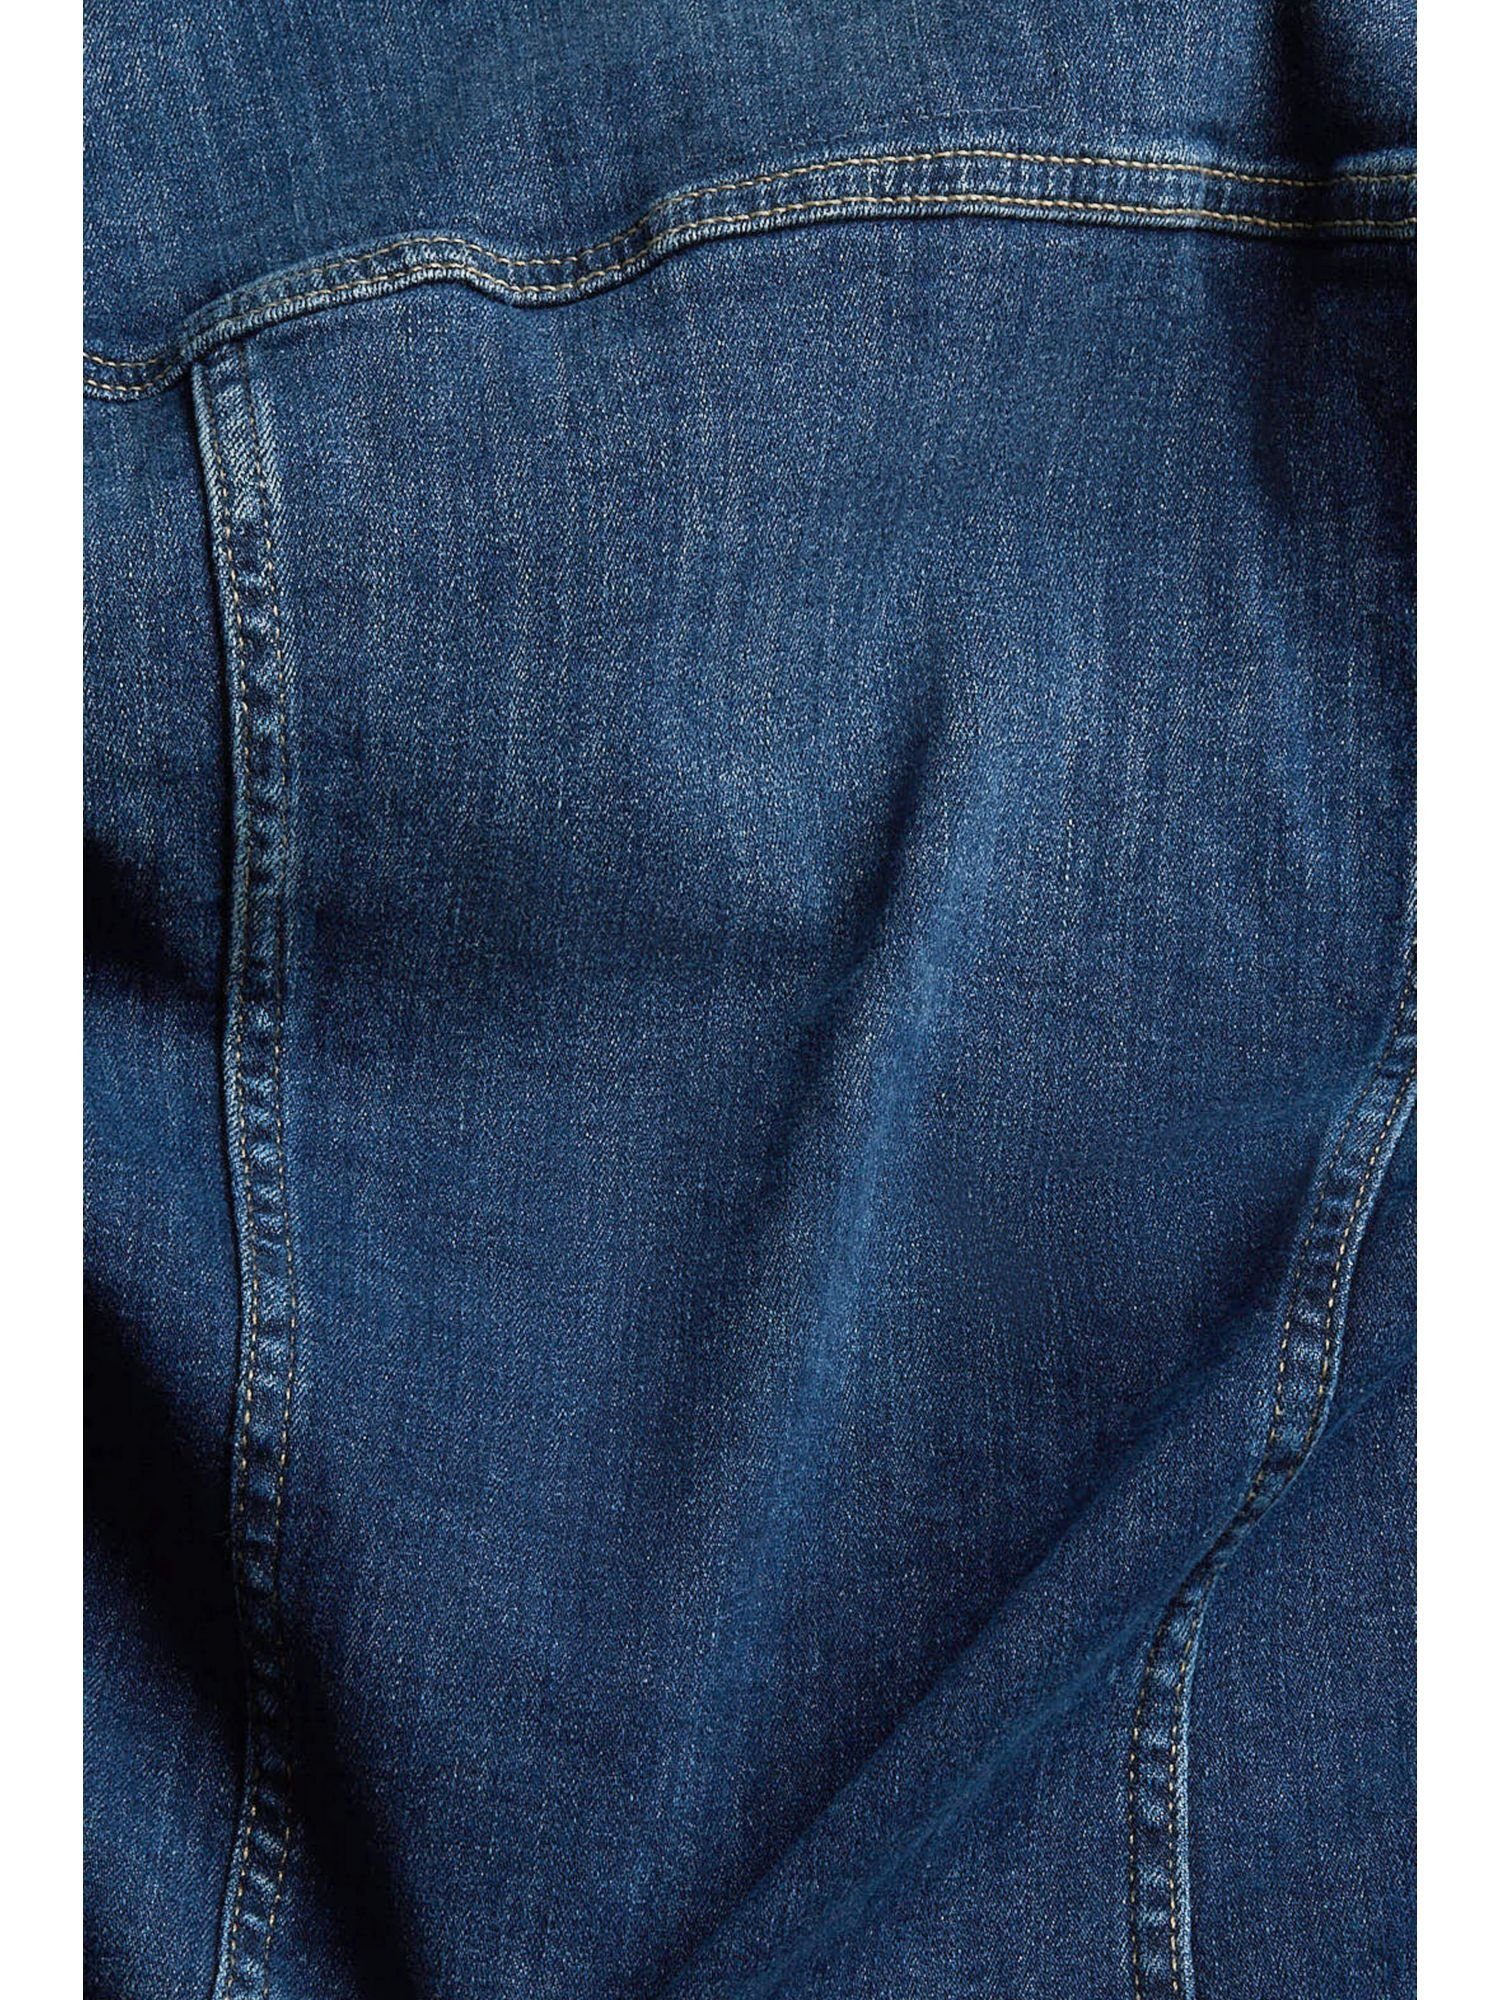 Jeansjacke Esprit Passform schmaler WASHED Jeansjacke in BLUE DARK